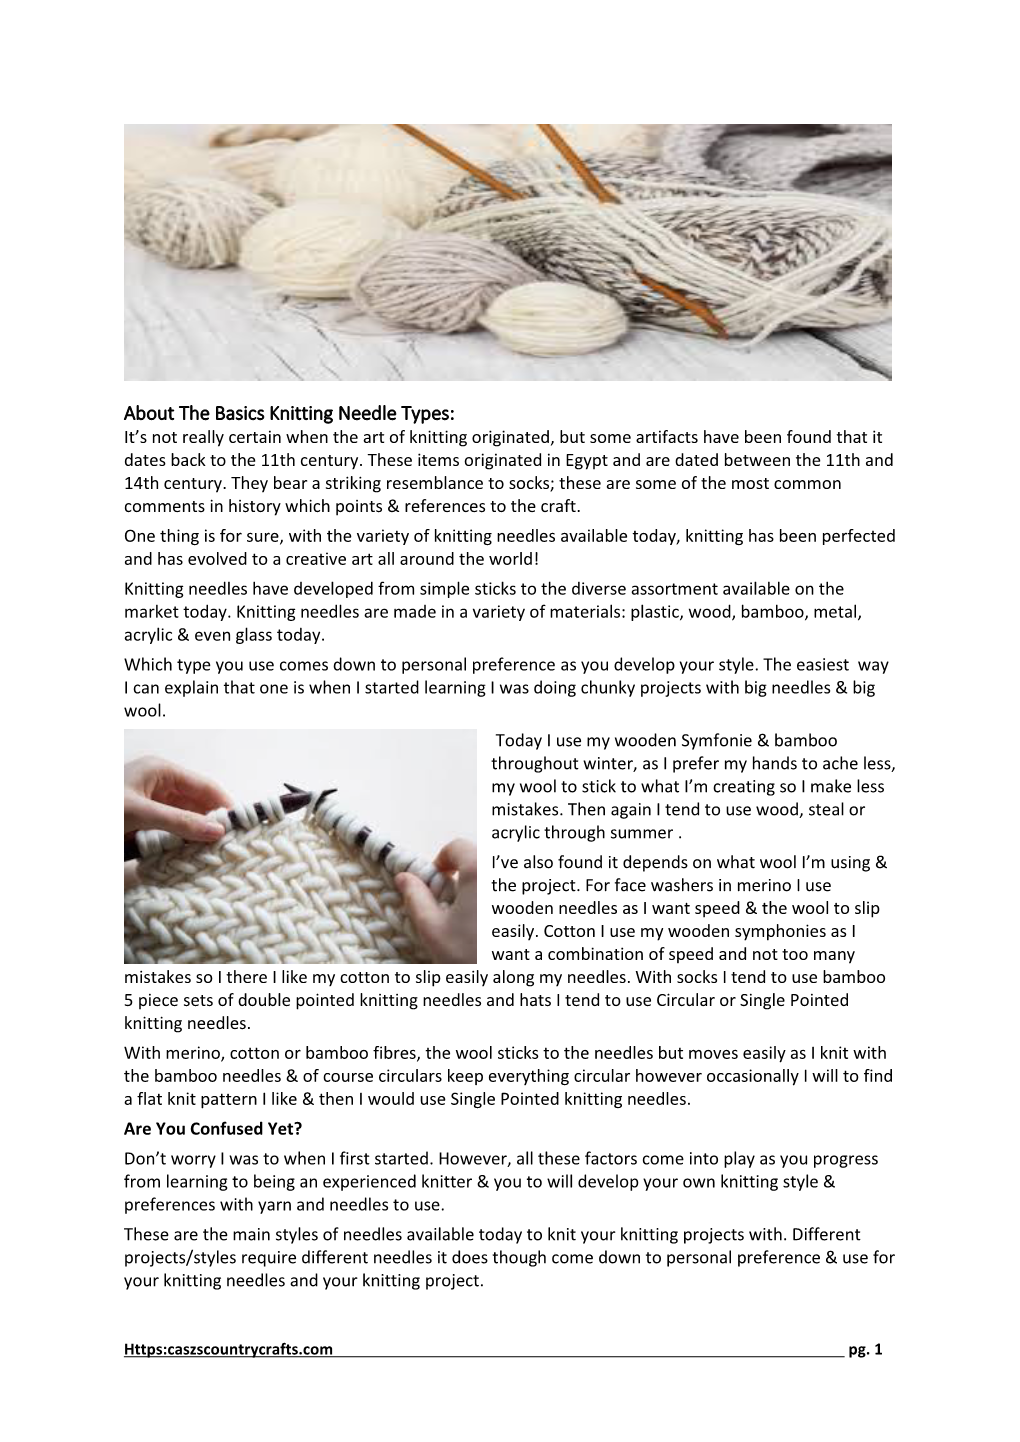 About the Basics Knitting Needle Types